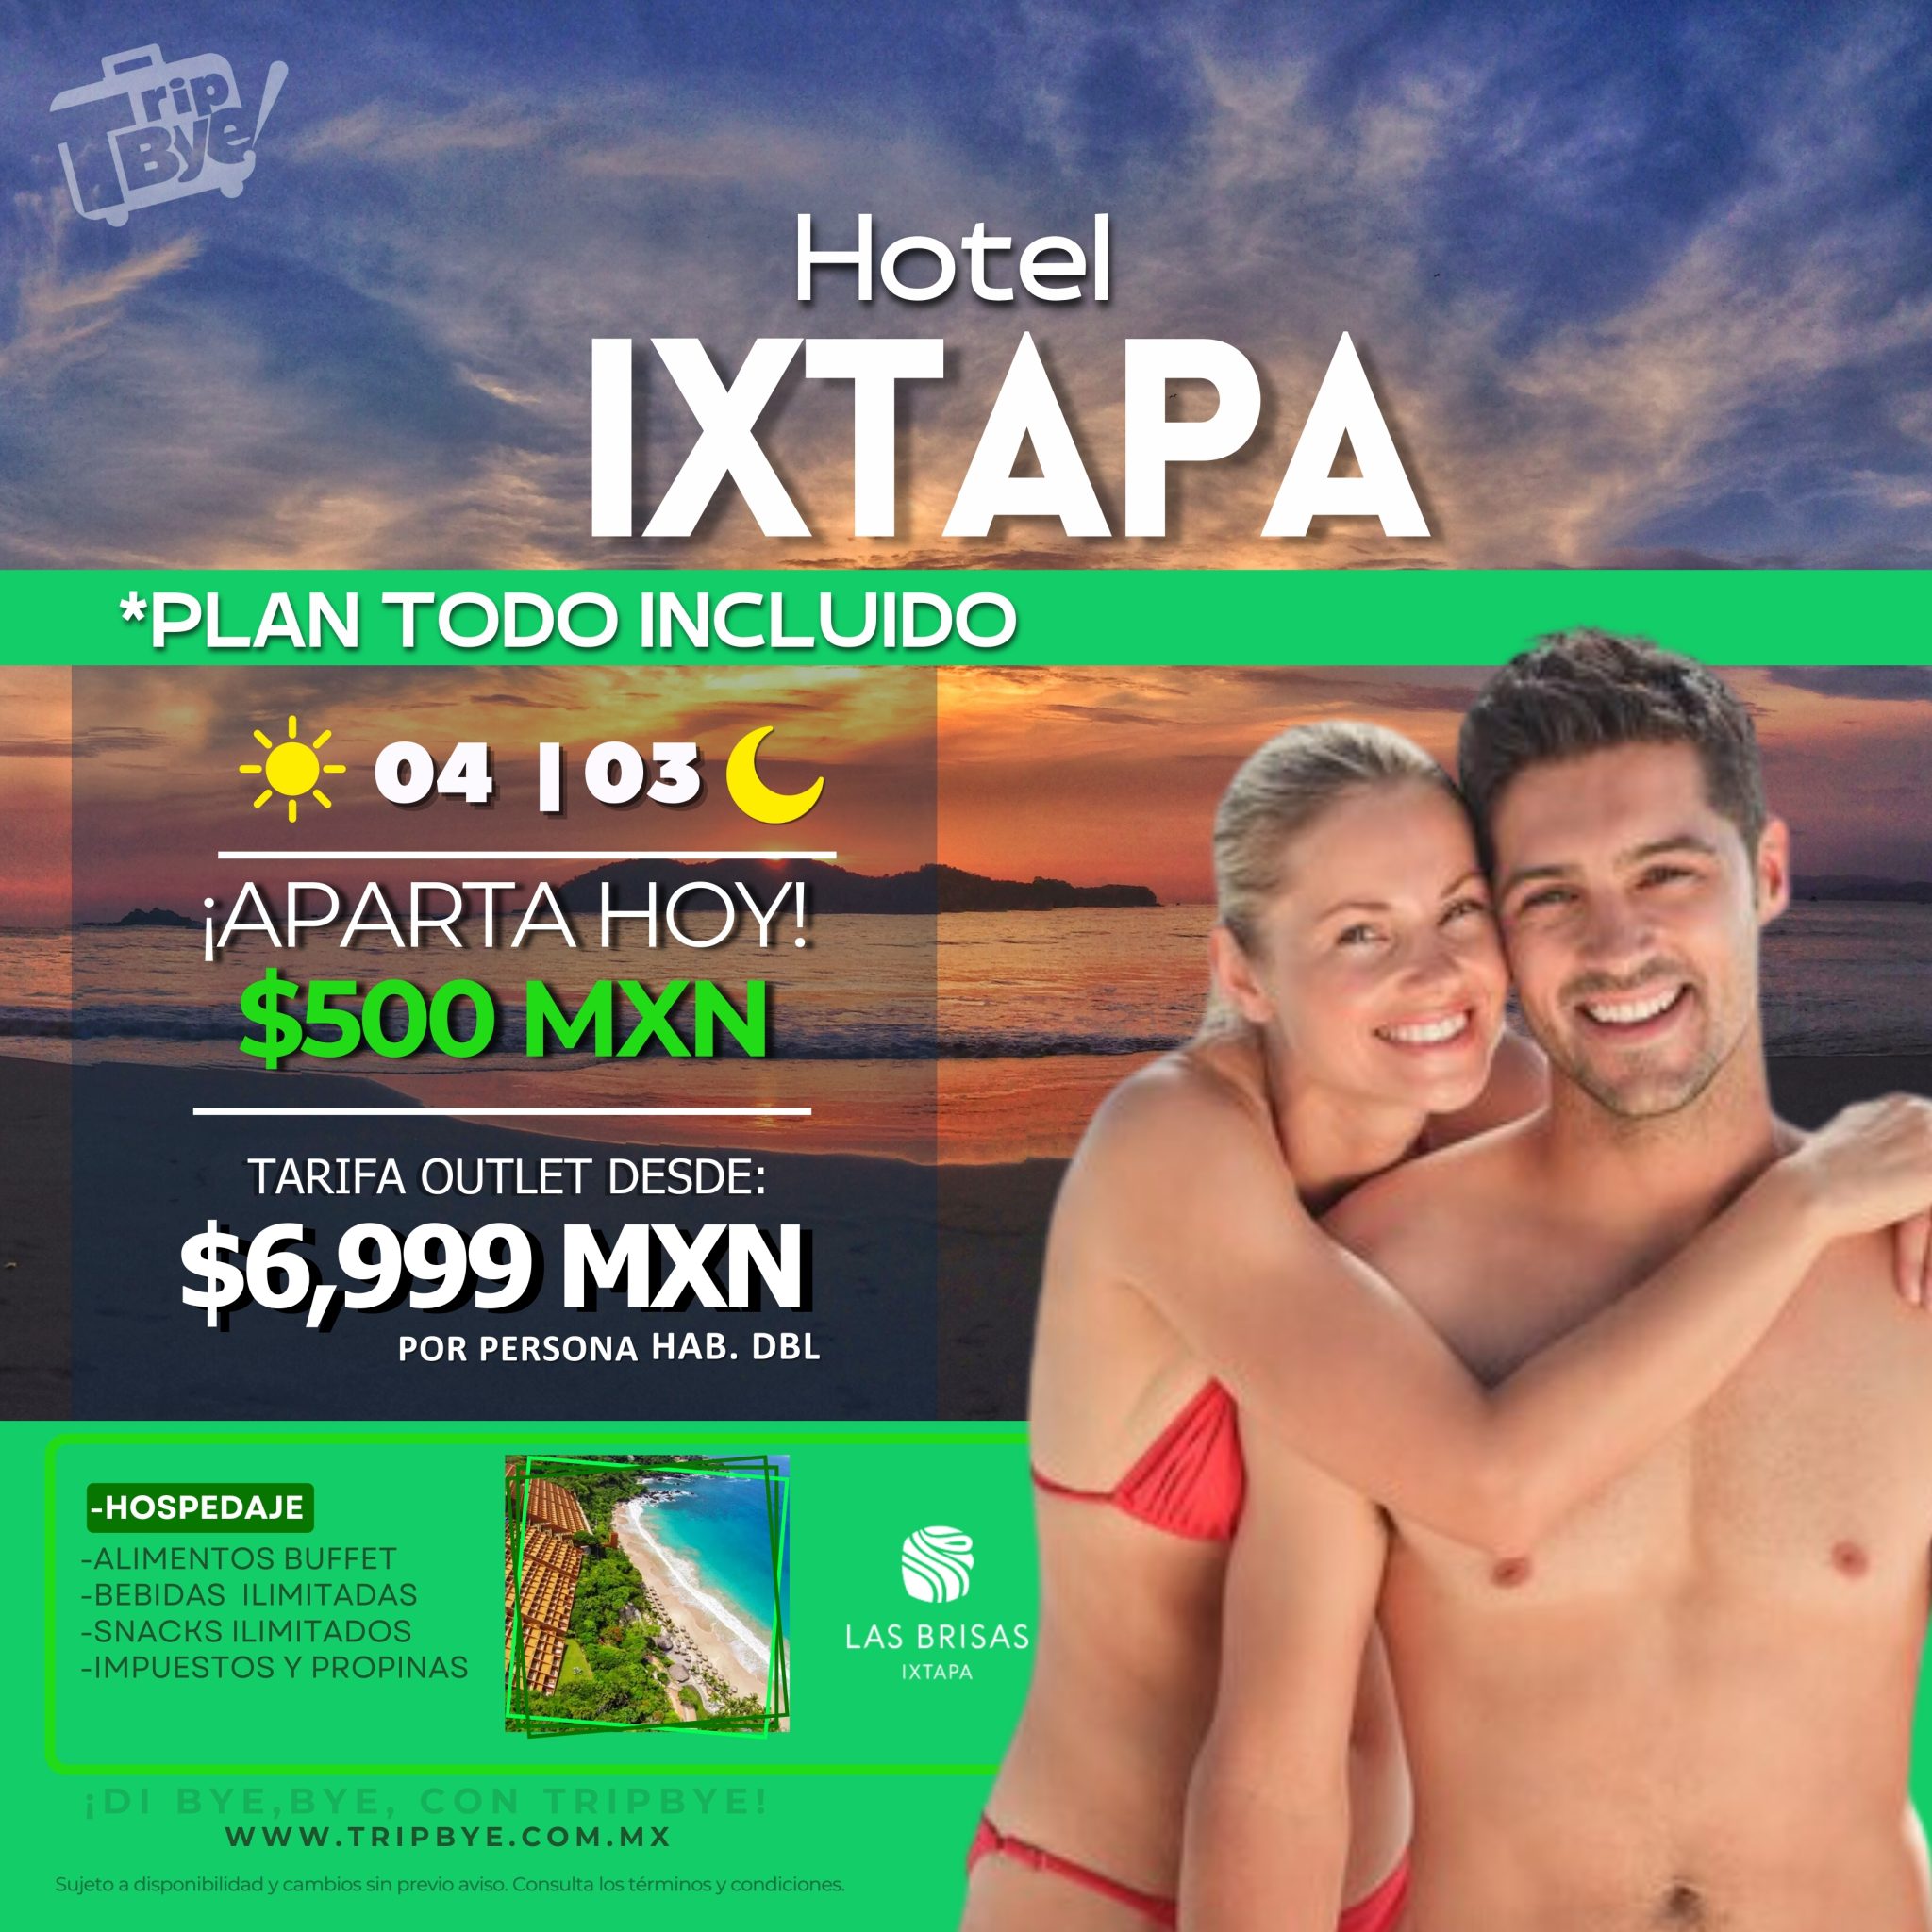 Hotel Las Brisas Ixtapa